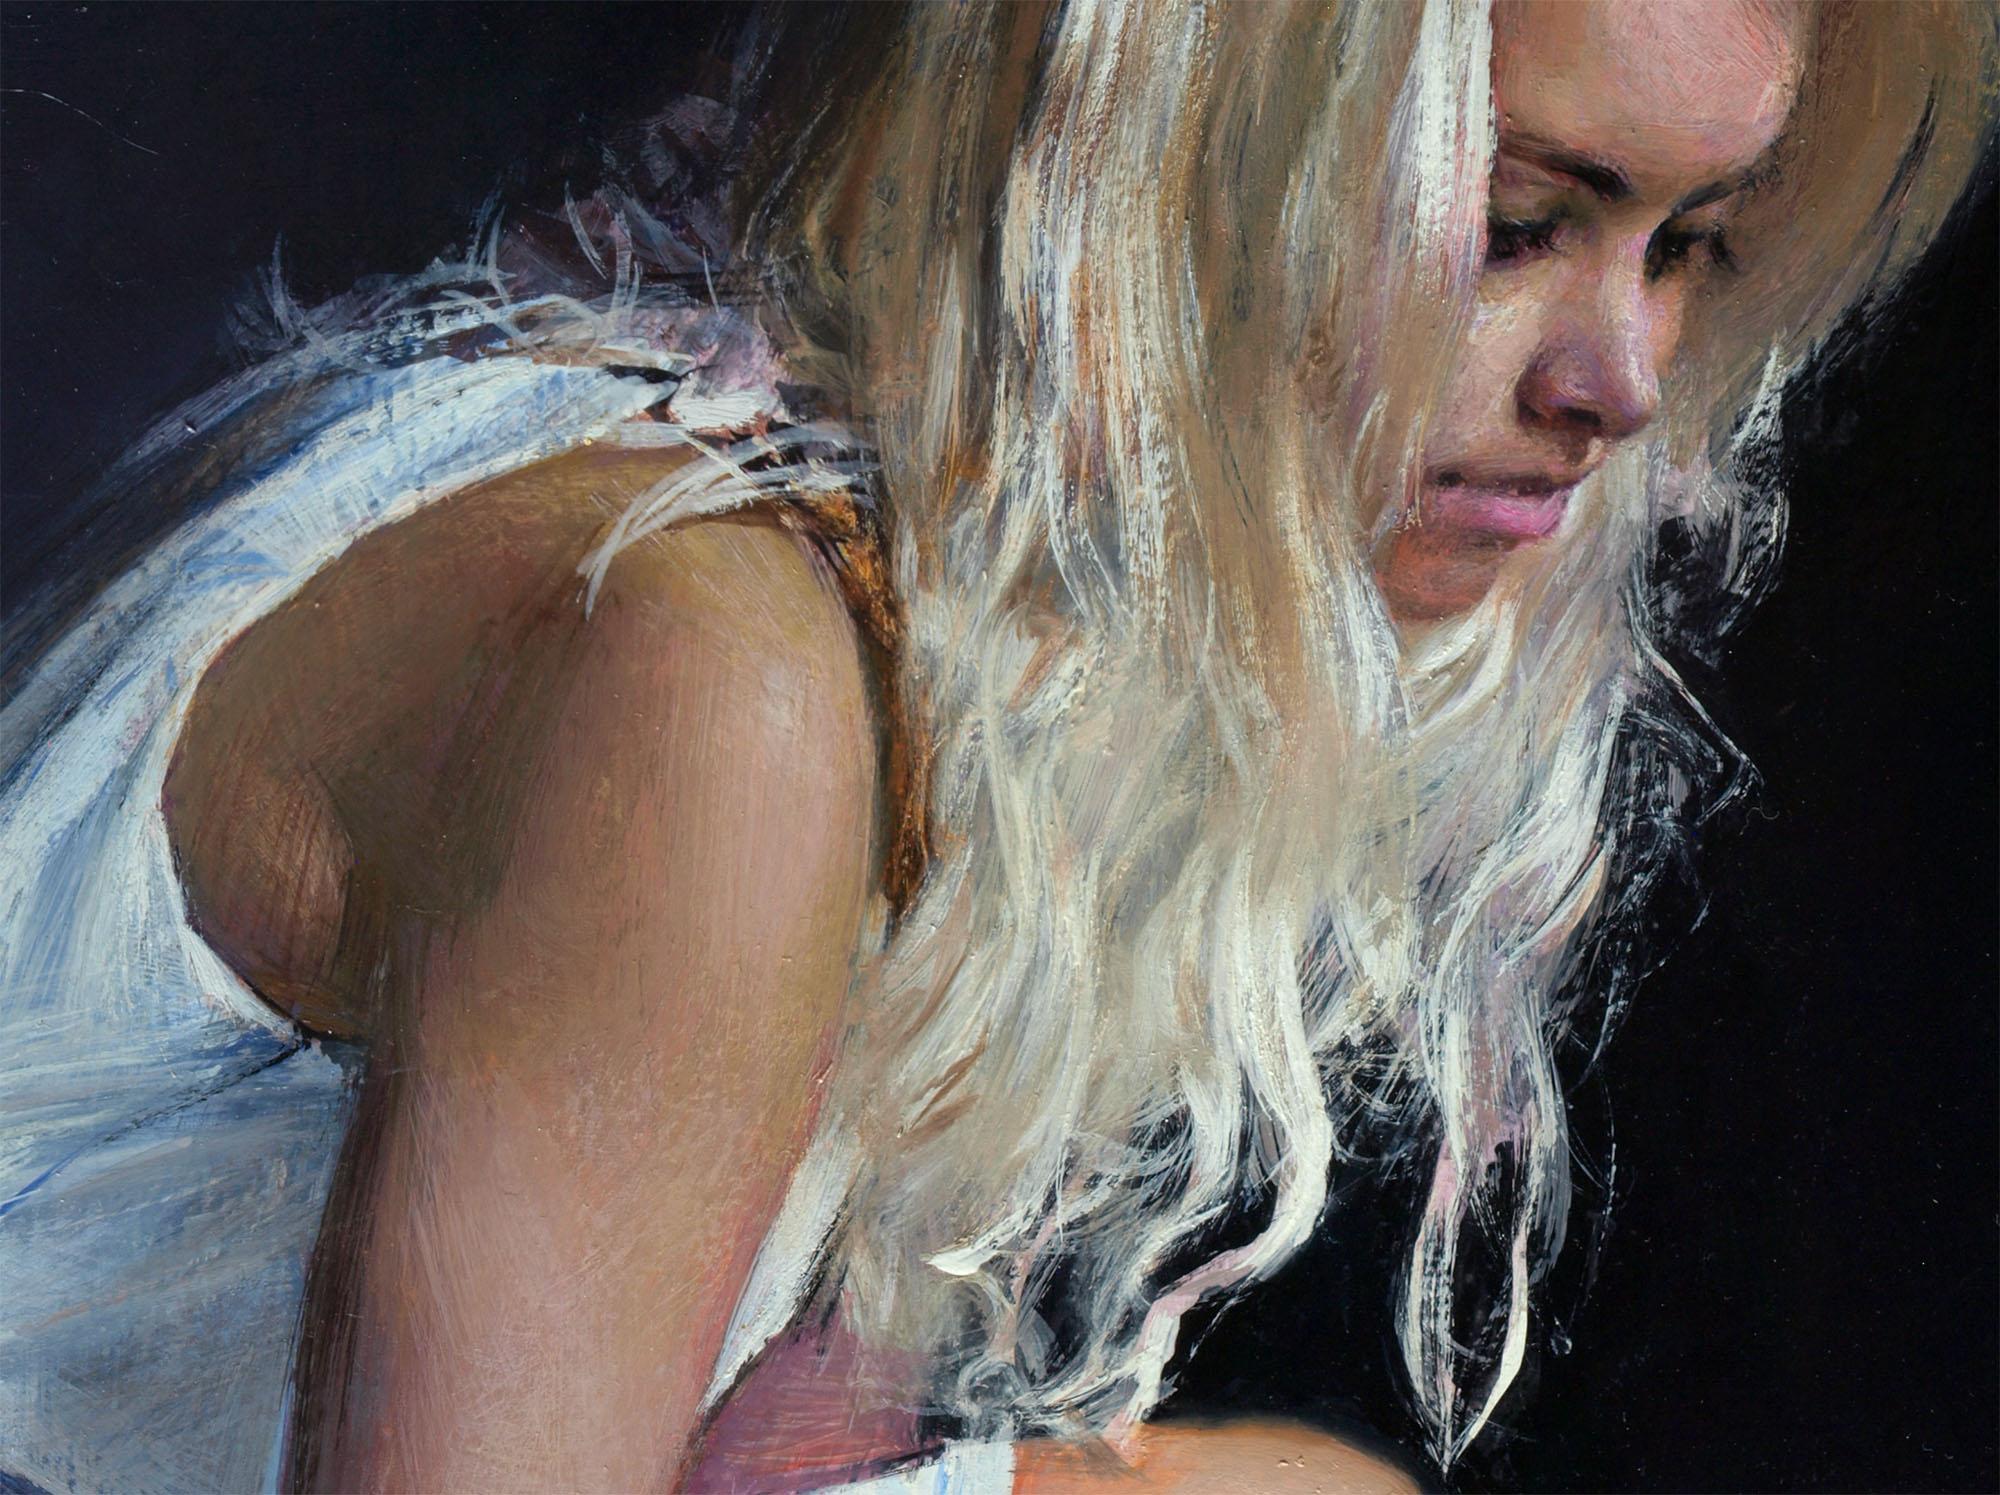 Daenerys morning - Painting by Evgeniy Monahov